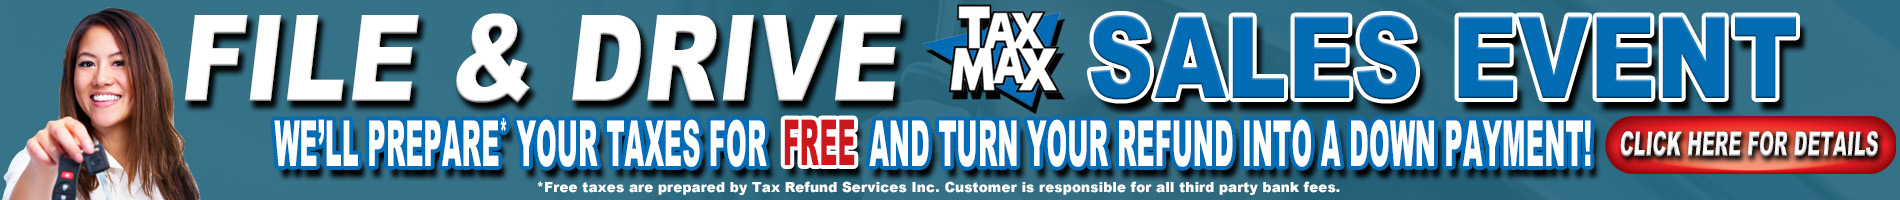 TaxMax Sales Event